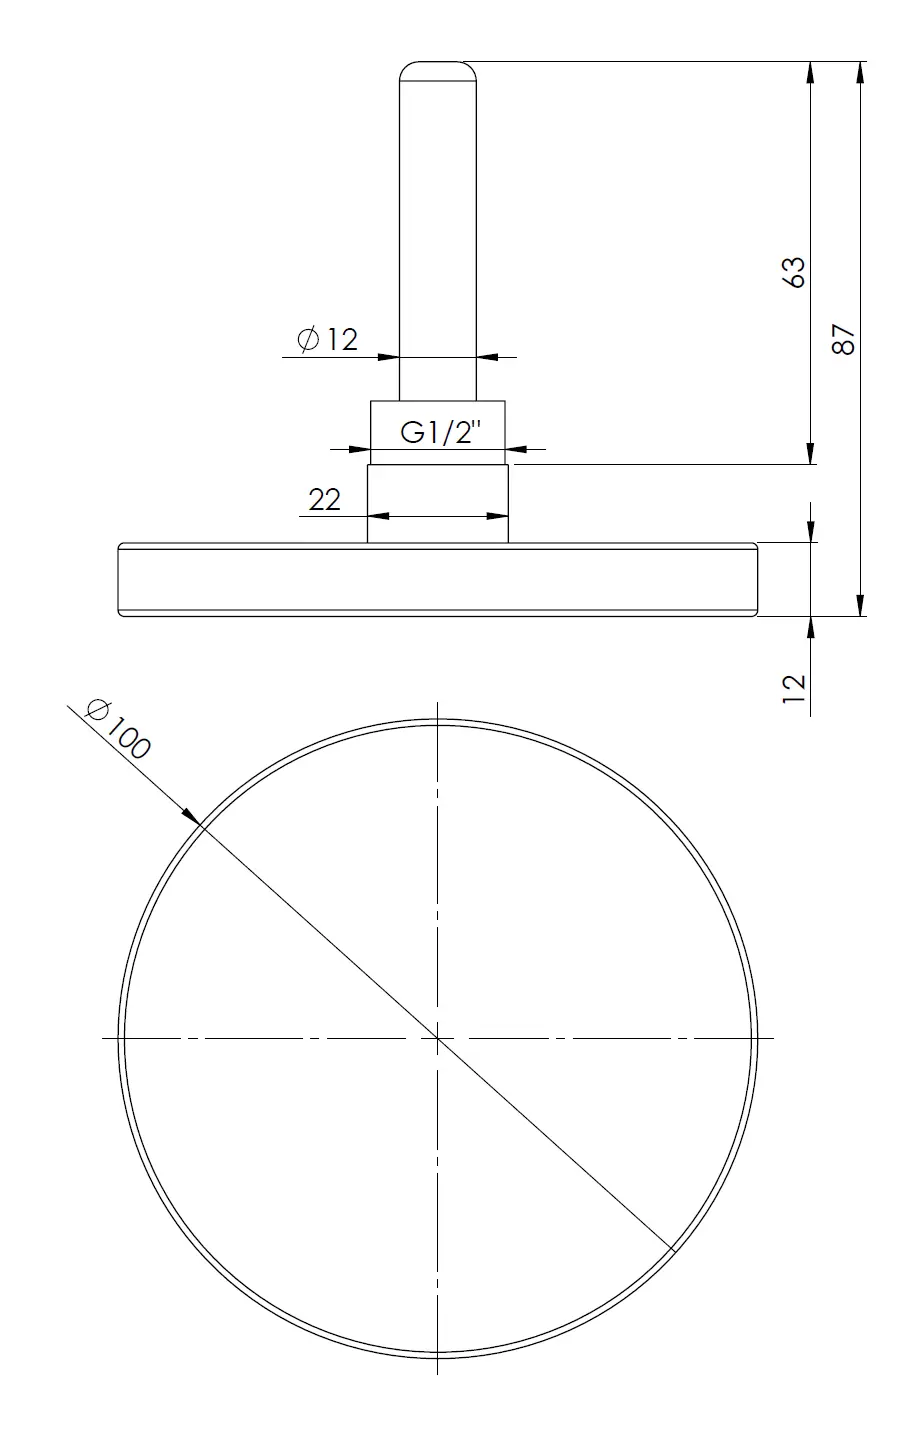 Termometr bimetaliczny BiTh 100, fi100 mm, 0÷120°C, L 63 mm, G1/2", ax, kl. 2 - budowa